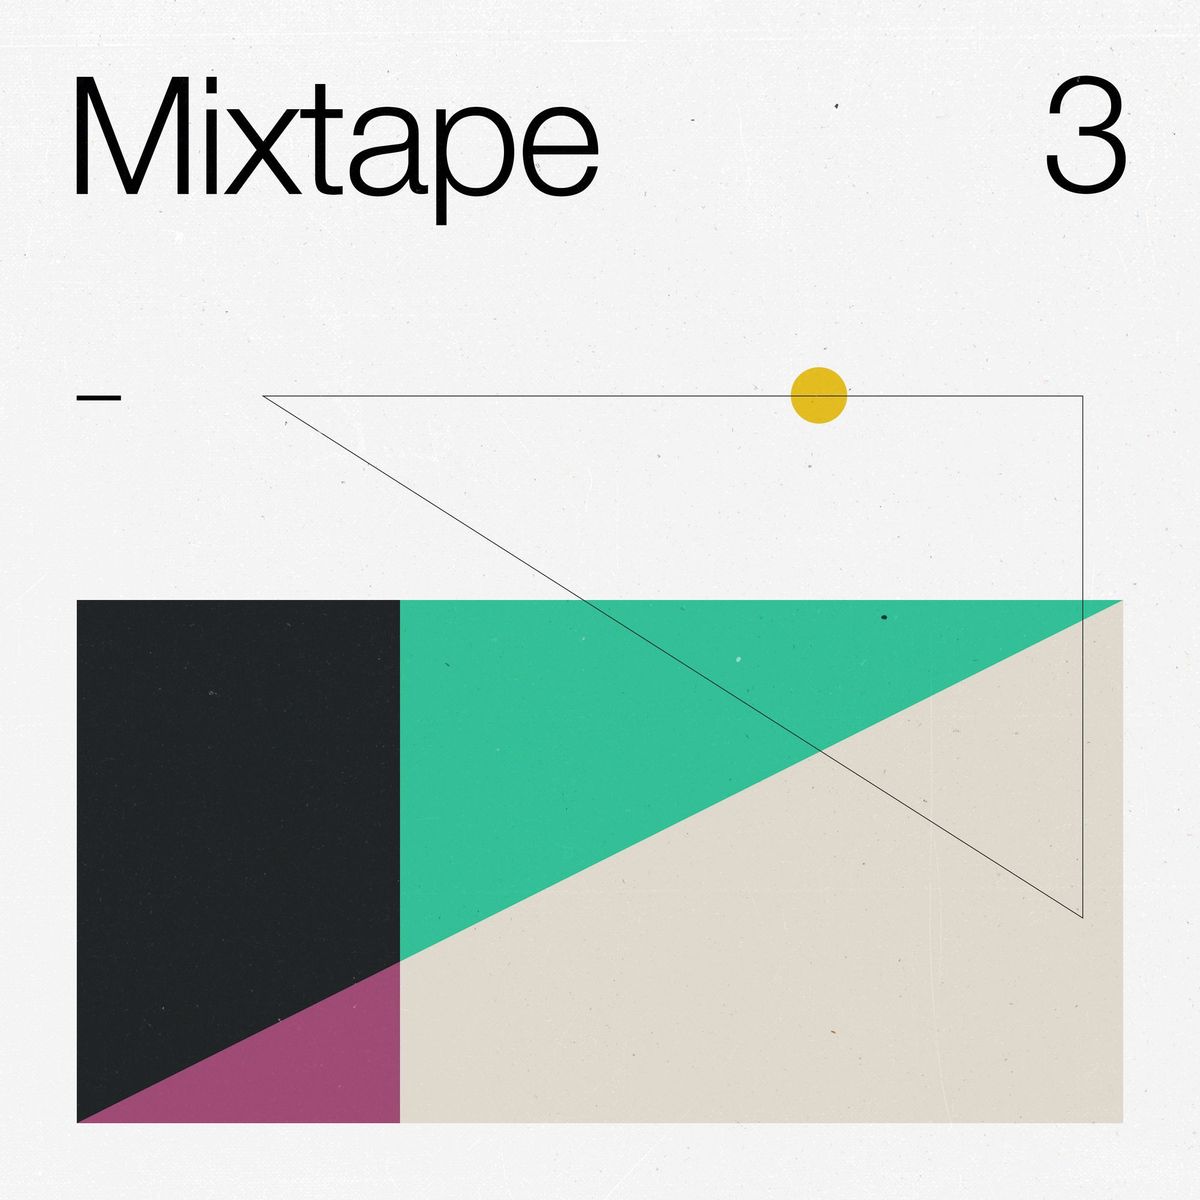 A1 Mixtape 3